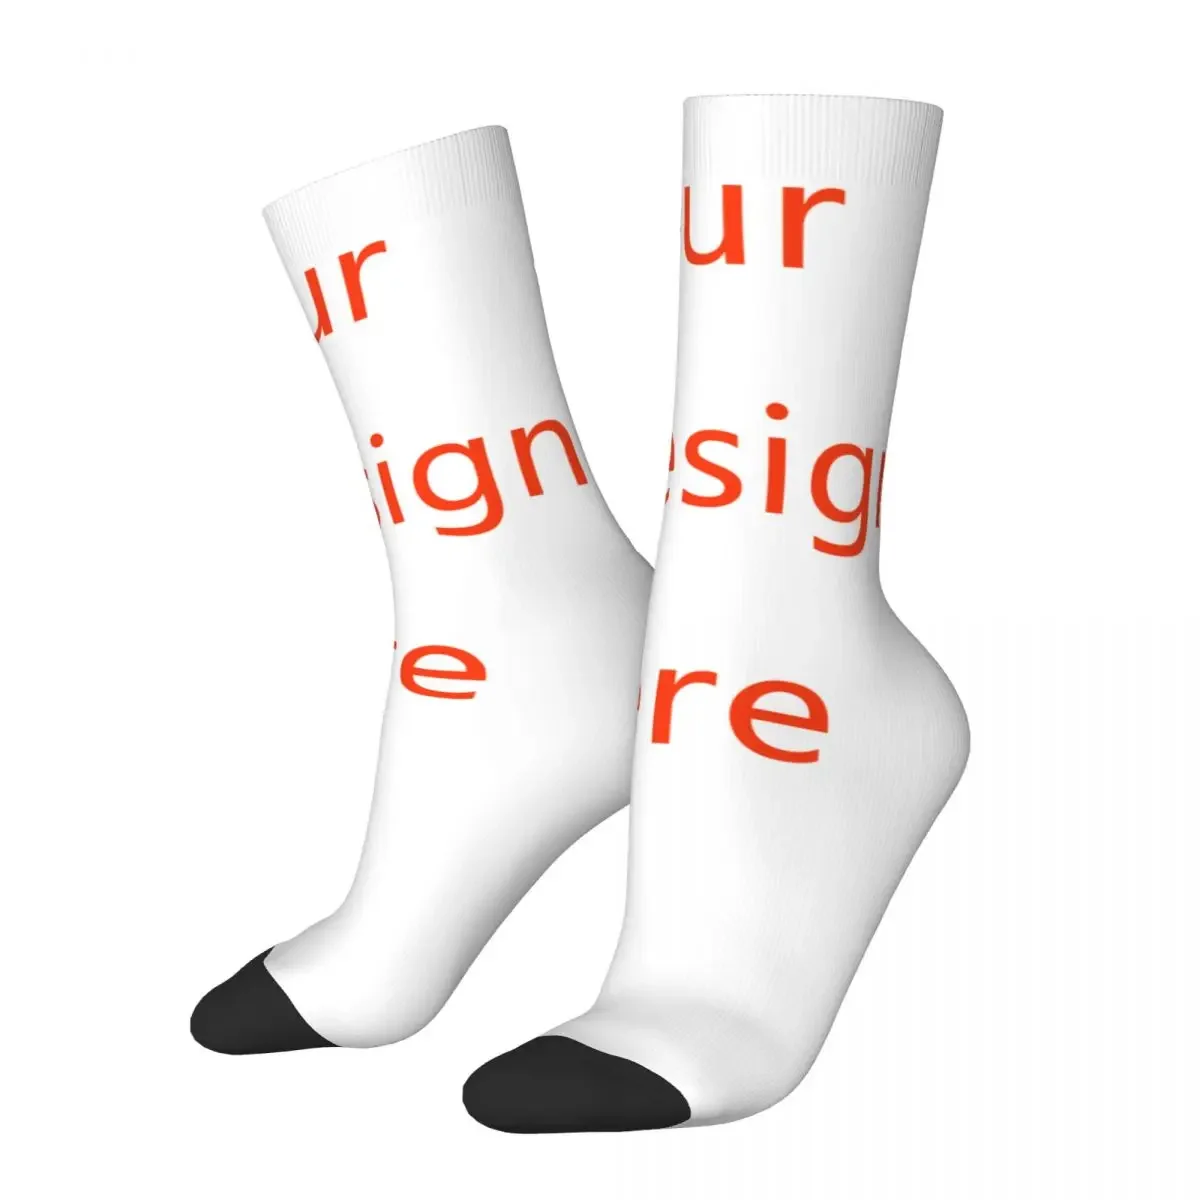 

Customized Fashion Socks Your OWN Design DIY Sock Skateboard Socks Spring Summer Novelty Street Style Crazy Socks for Men Women